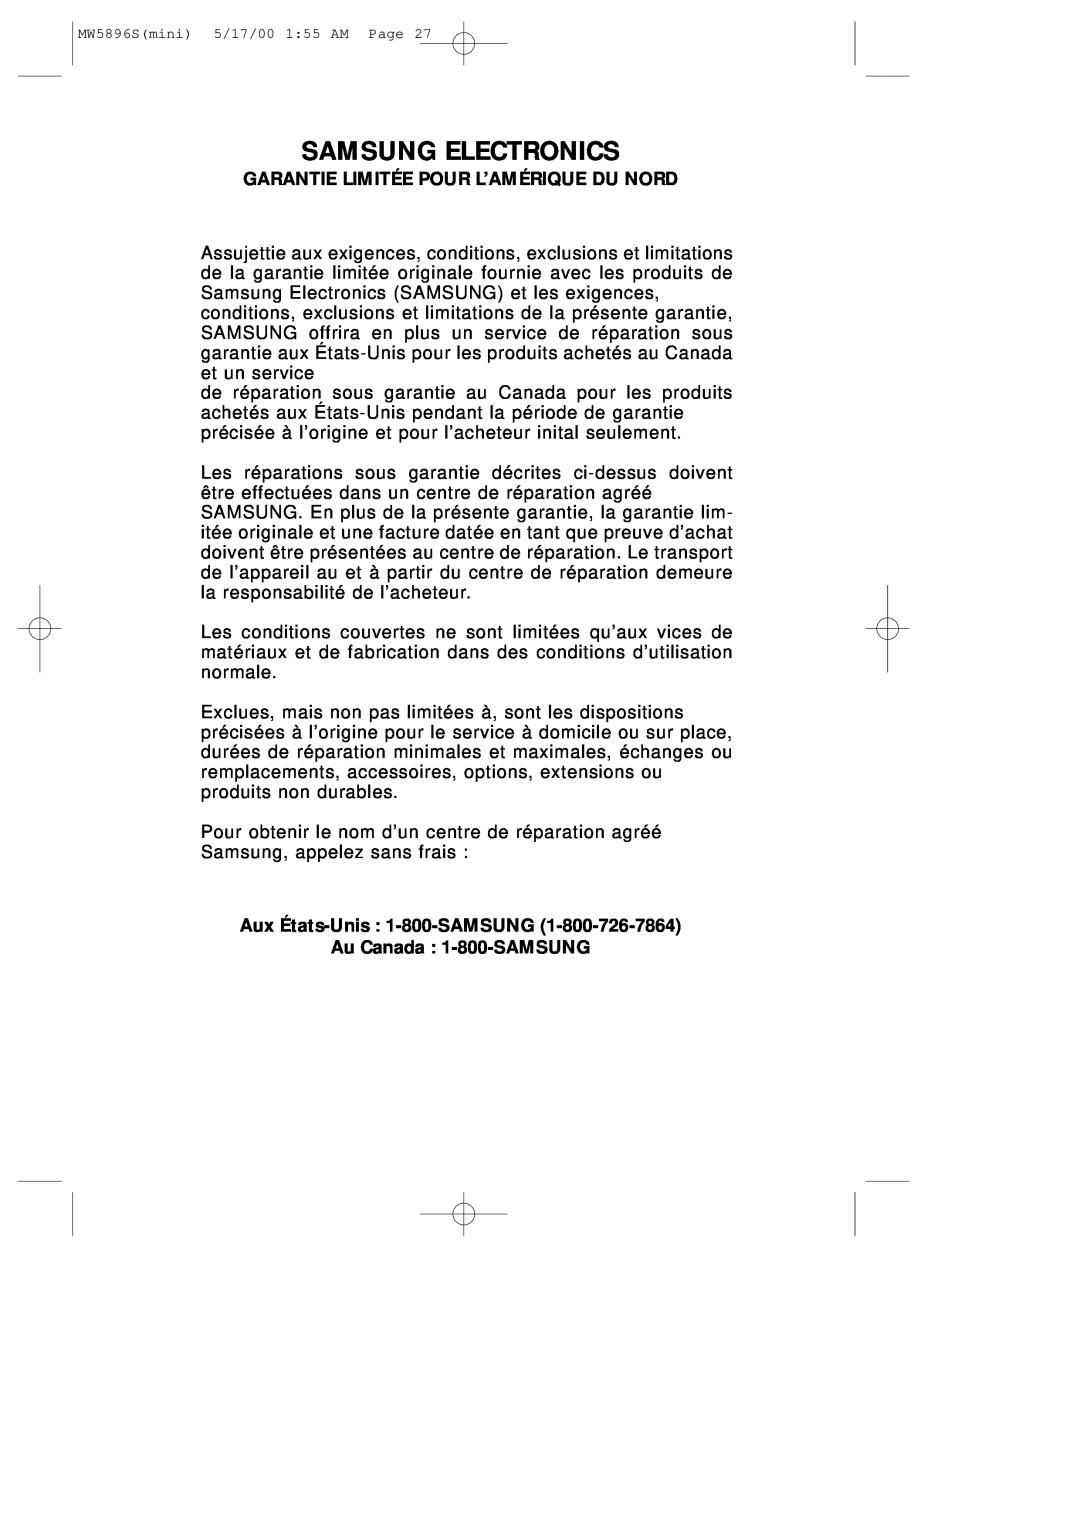 Samsung MW5892S owner manual Garantie Limitée Pour L’Amérique Du Nord, Samsung Electronics 